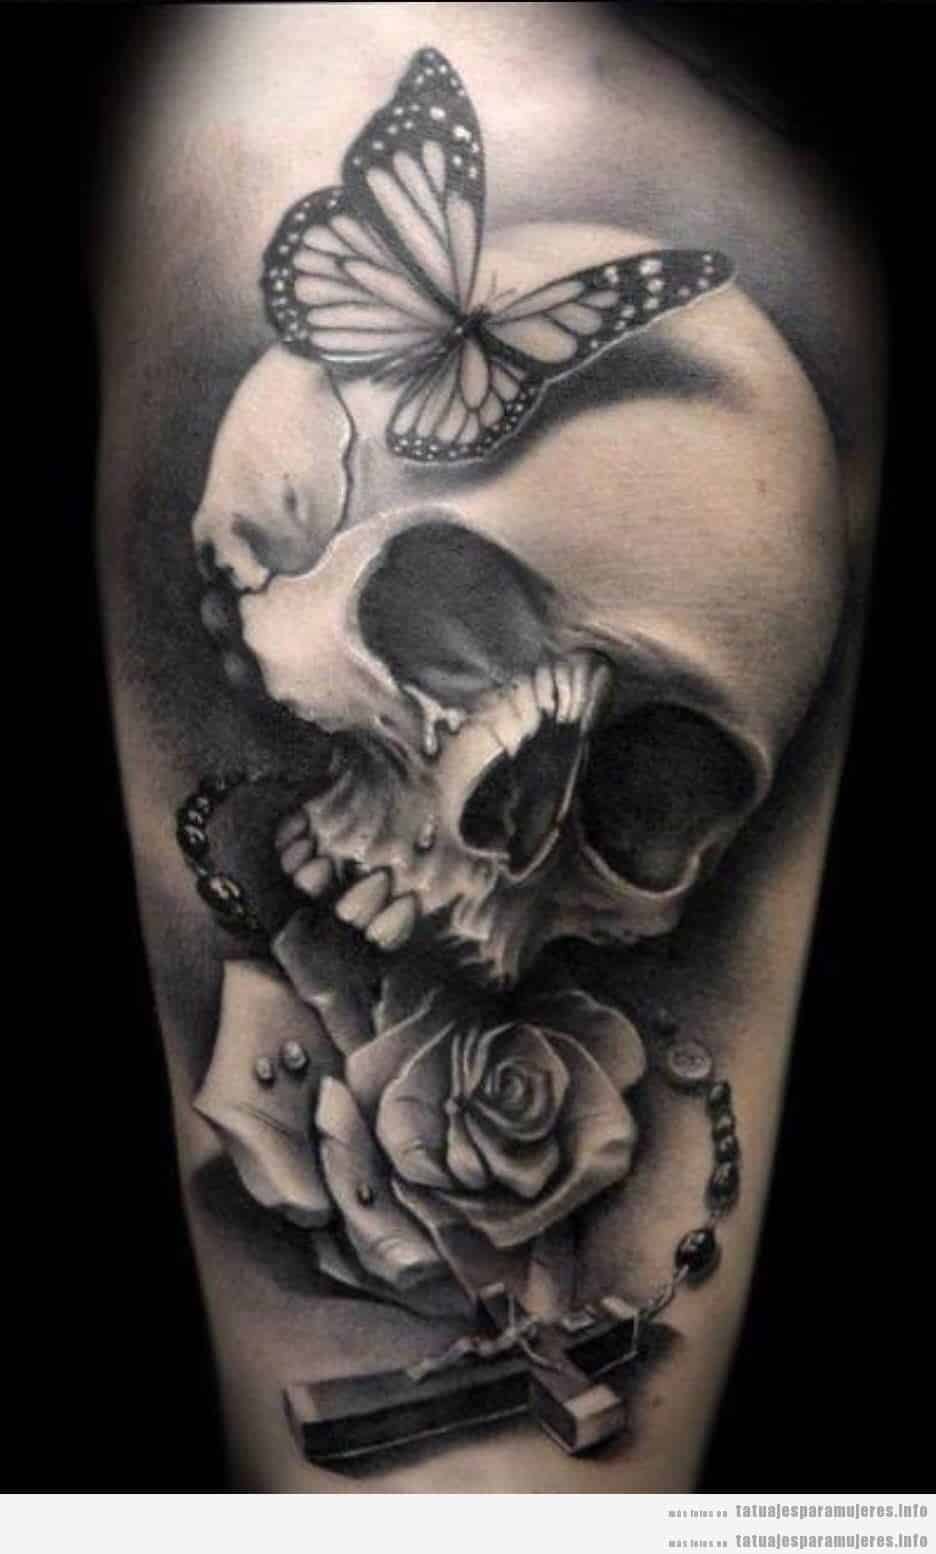 Diseño de tatuajes oscuros y góticos para mujer, calavera 2